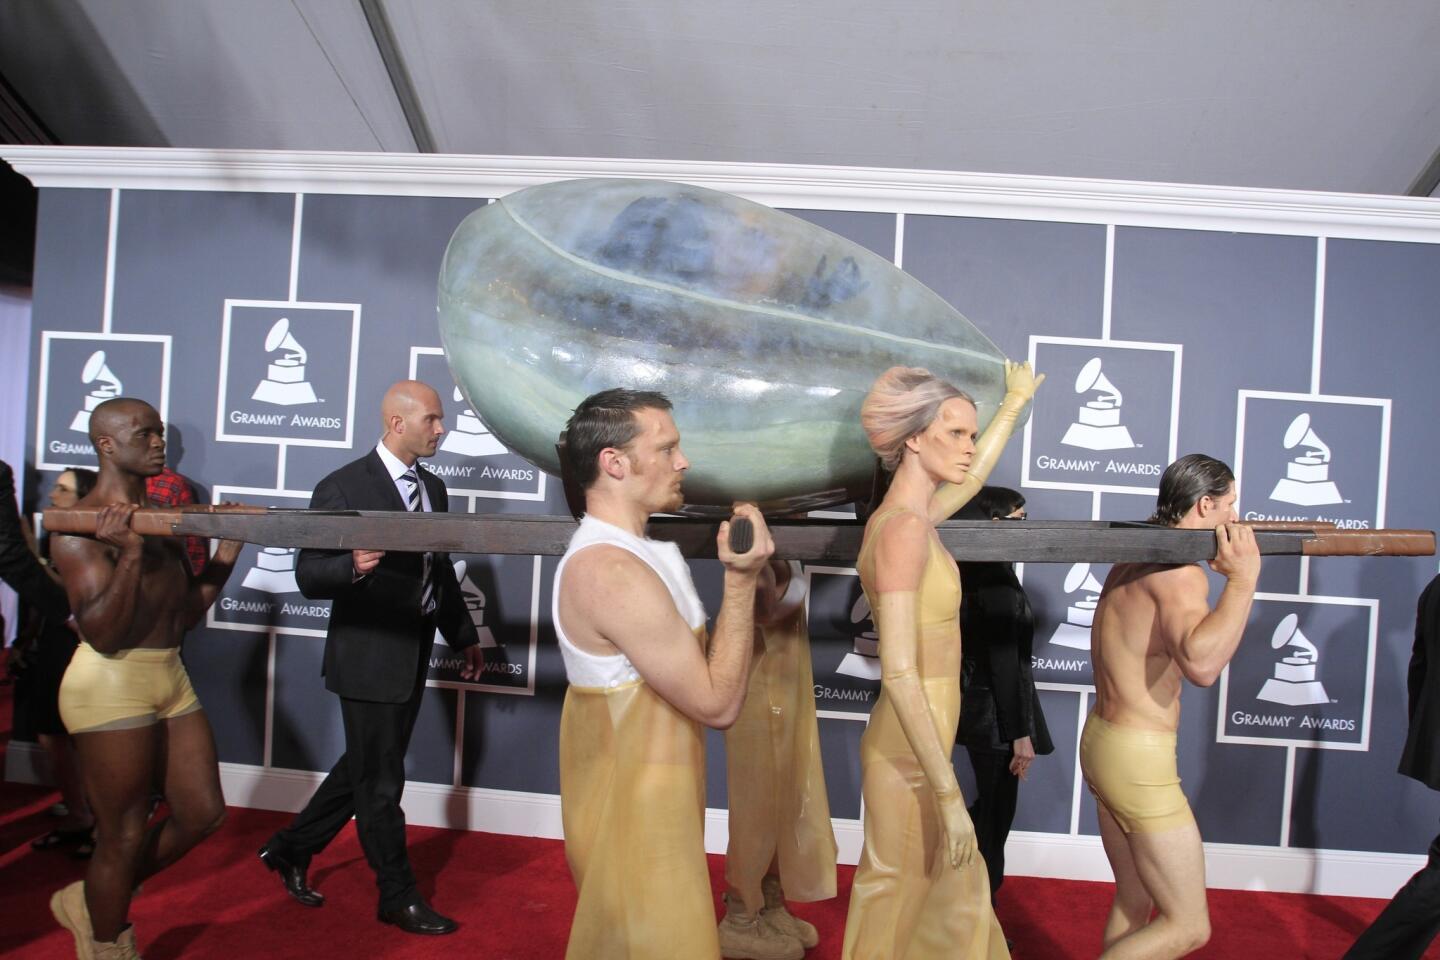 Lady Gaga at the 2011 Grammy Awards